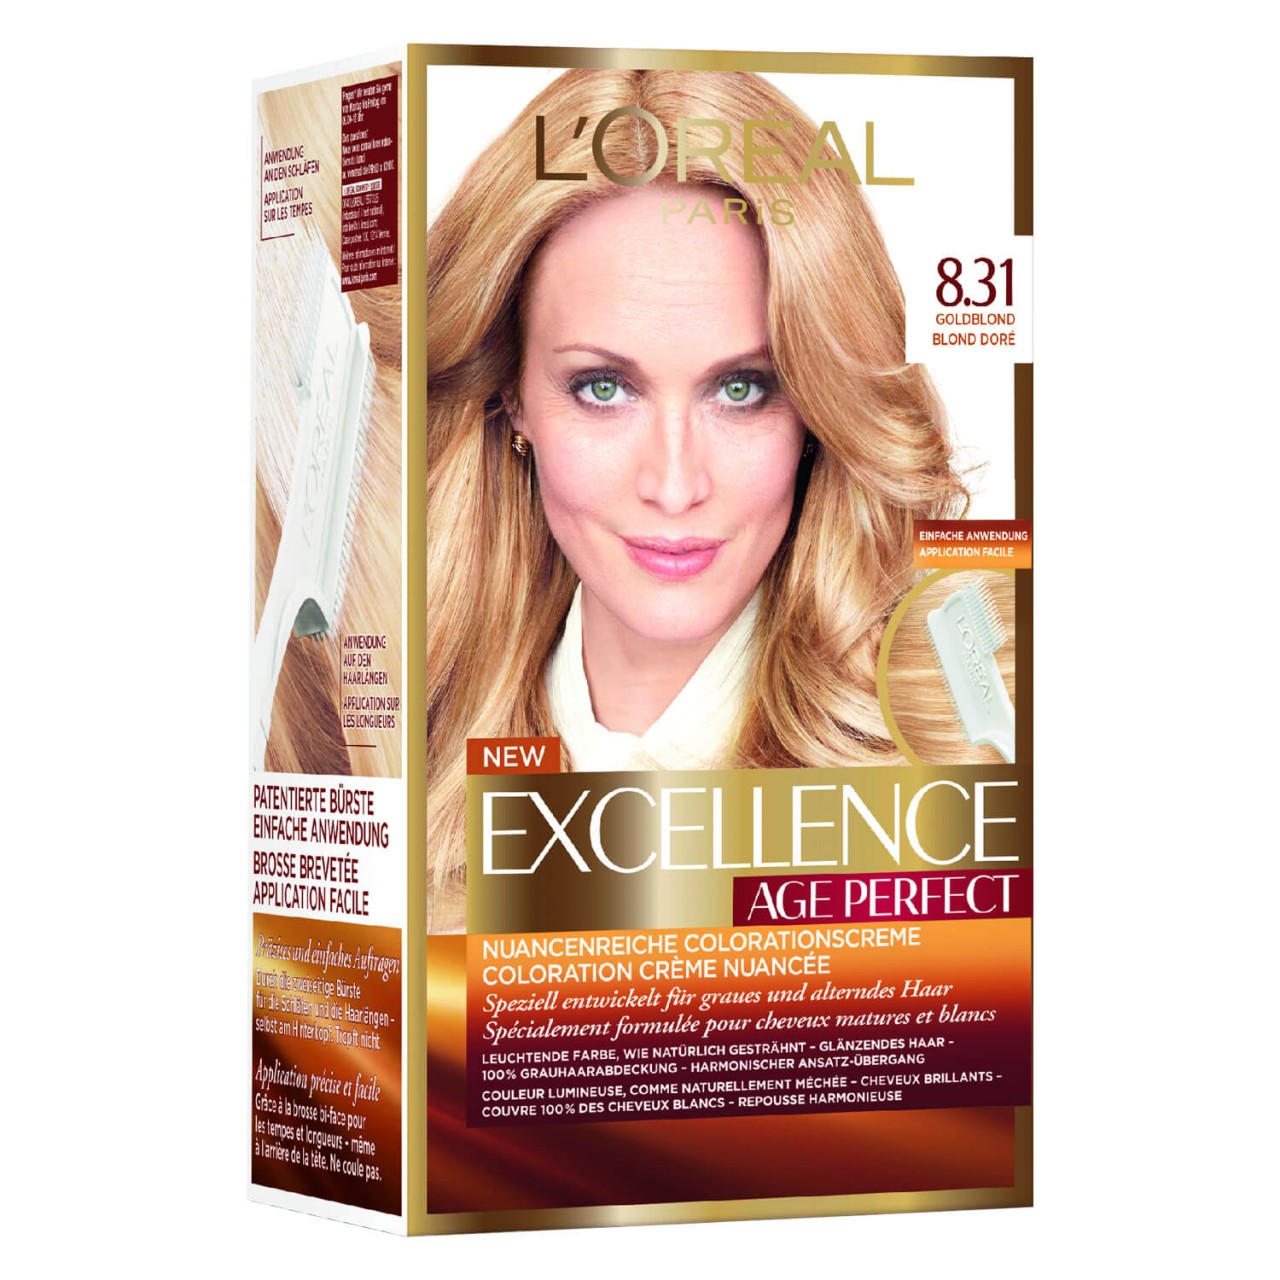 LOréal Age Perfect Color - 8.31 Goldblond von L'Oréal Paris